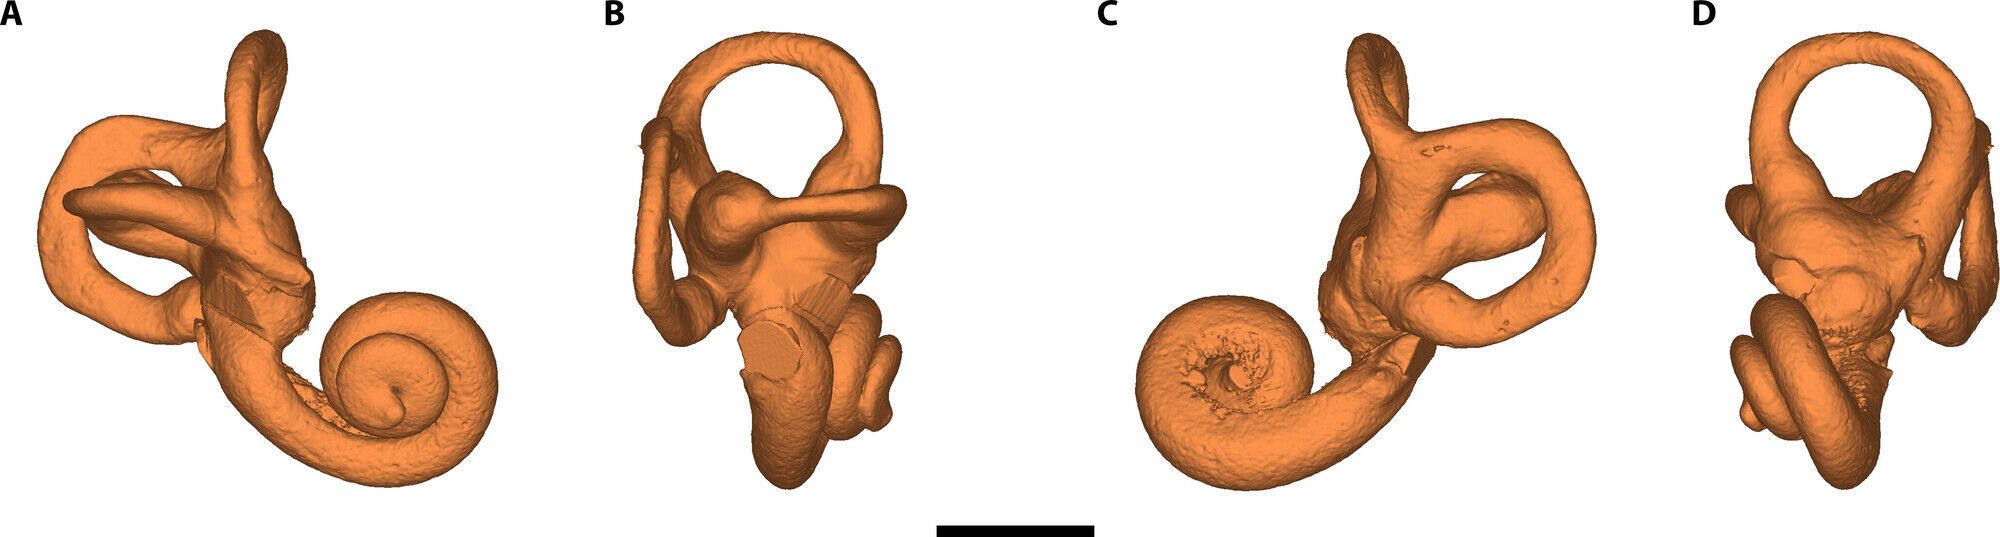 Первый случай синдрома Дауна среди неандертальцев обнаружен у шестилетнего ребенка: он жил более 145 000 лет назад. Фото